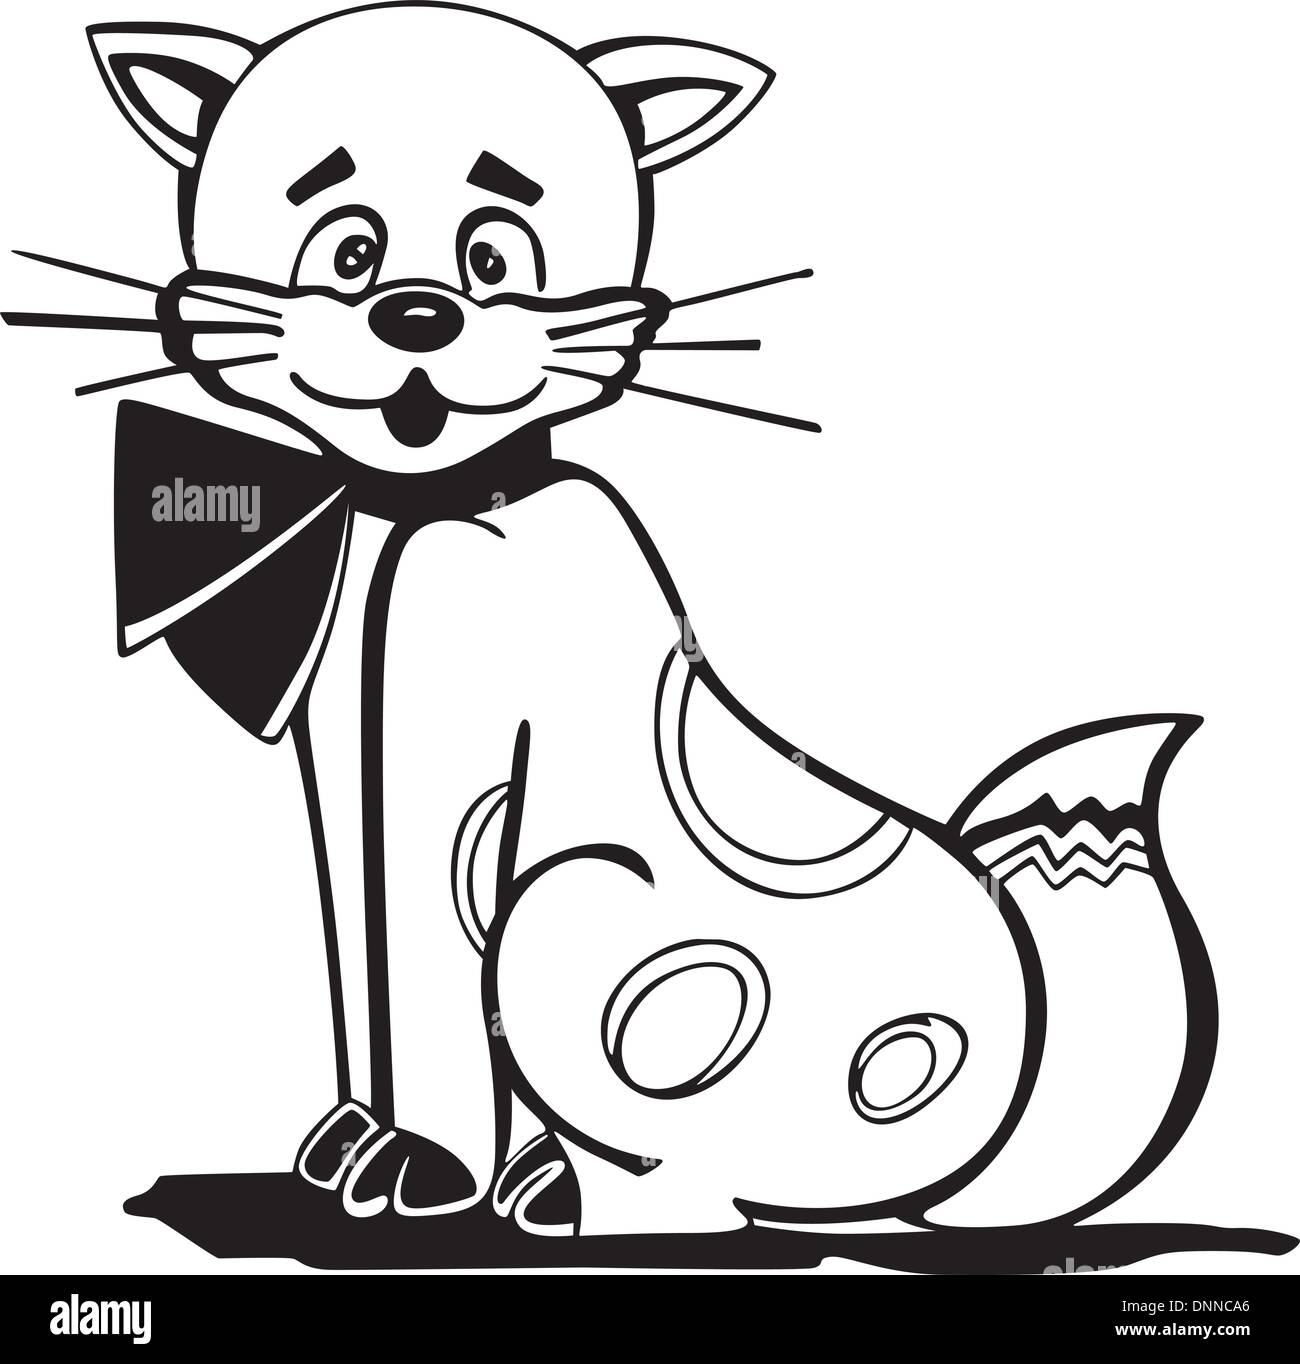 elegante Kitty mit einer Schleife am Hals, Cartoon schwarz-weiß Vektor-illustration Stock Vektor